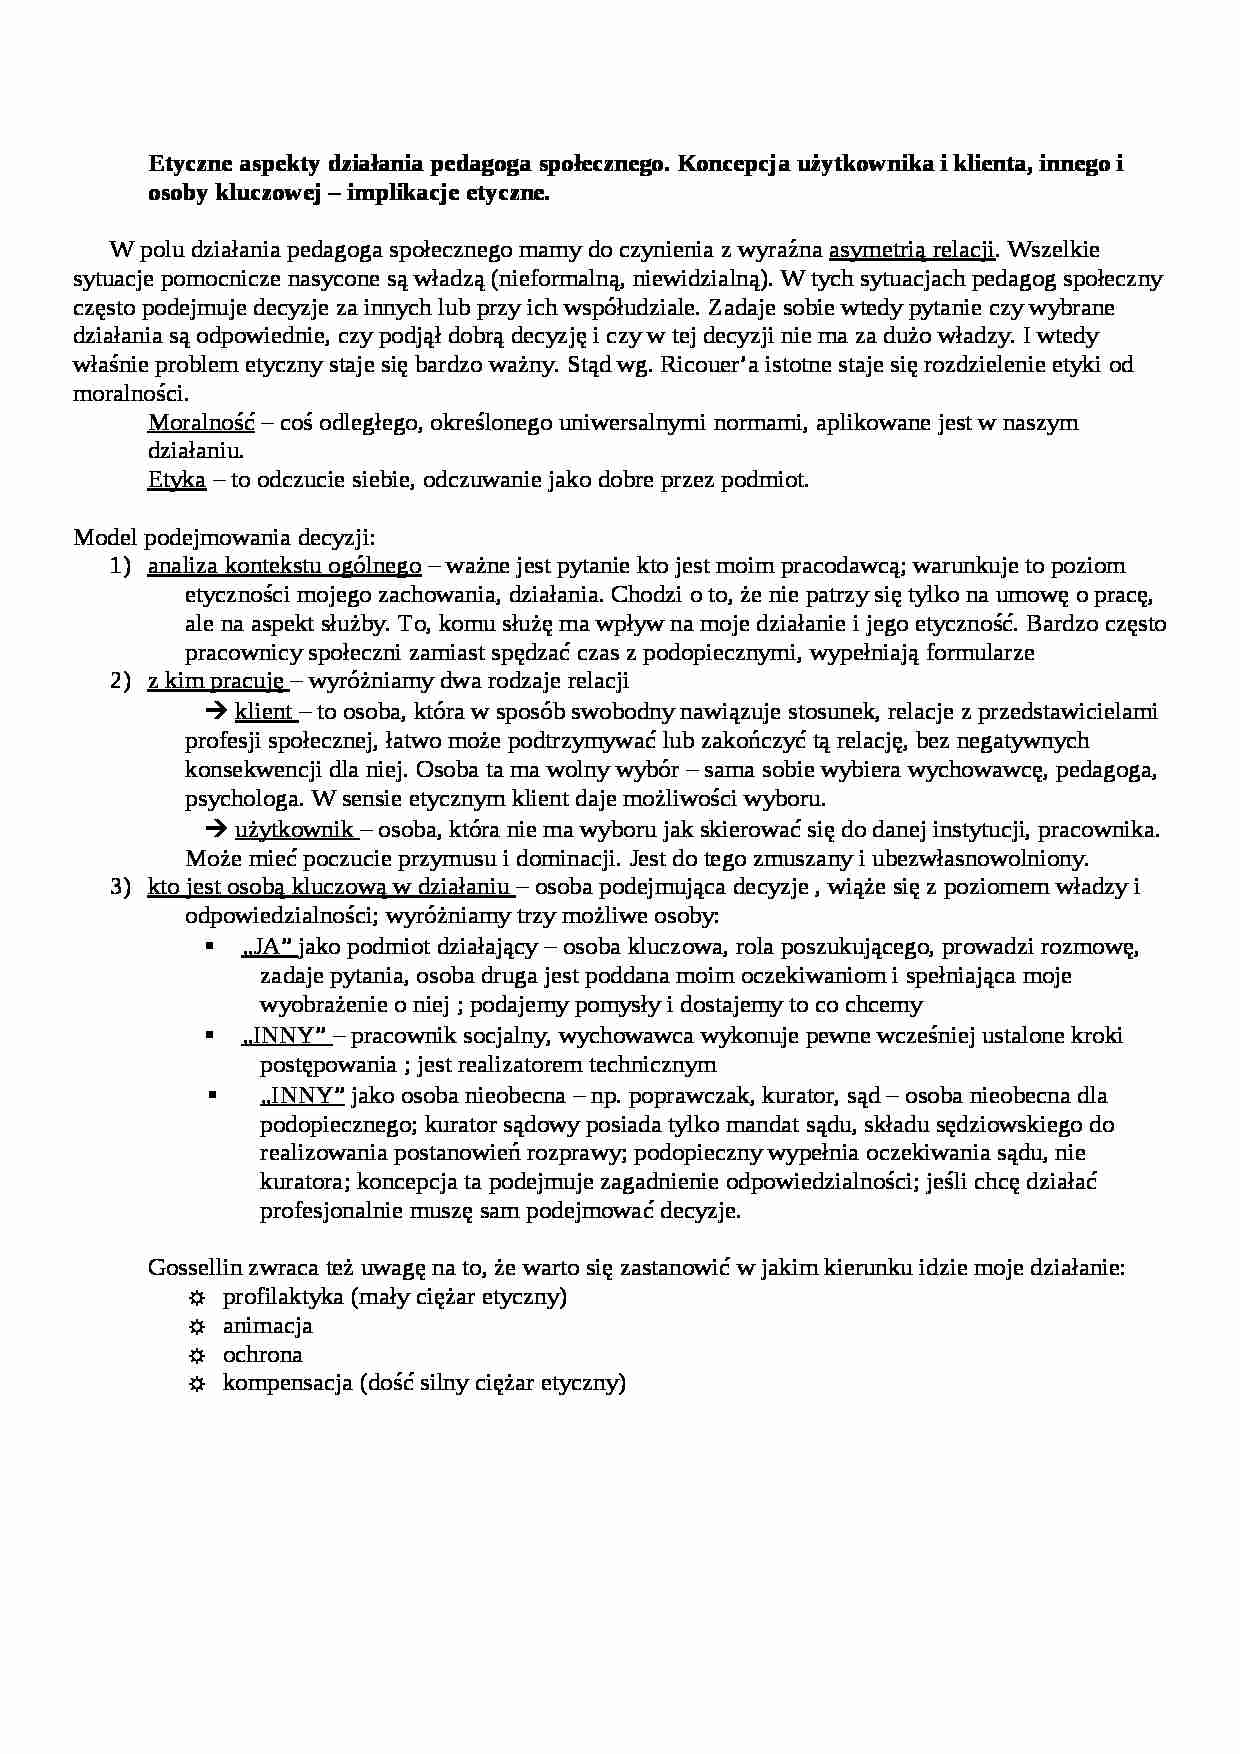 Etyczne aspekty działania pedagoga społecznego-opracowanie - strona 1